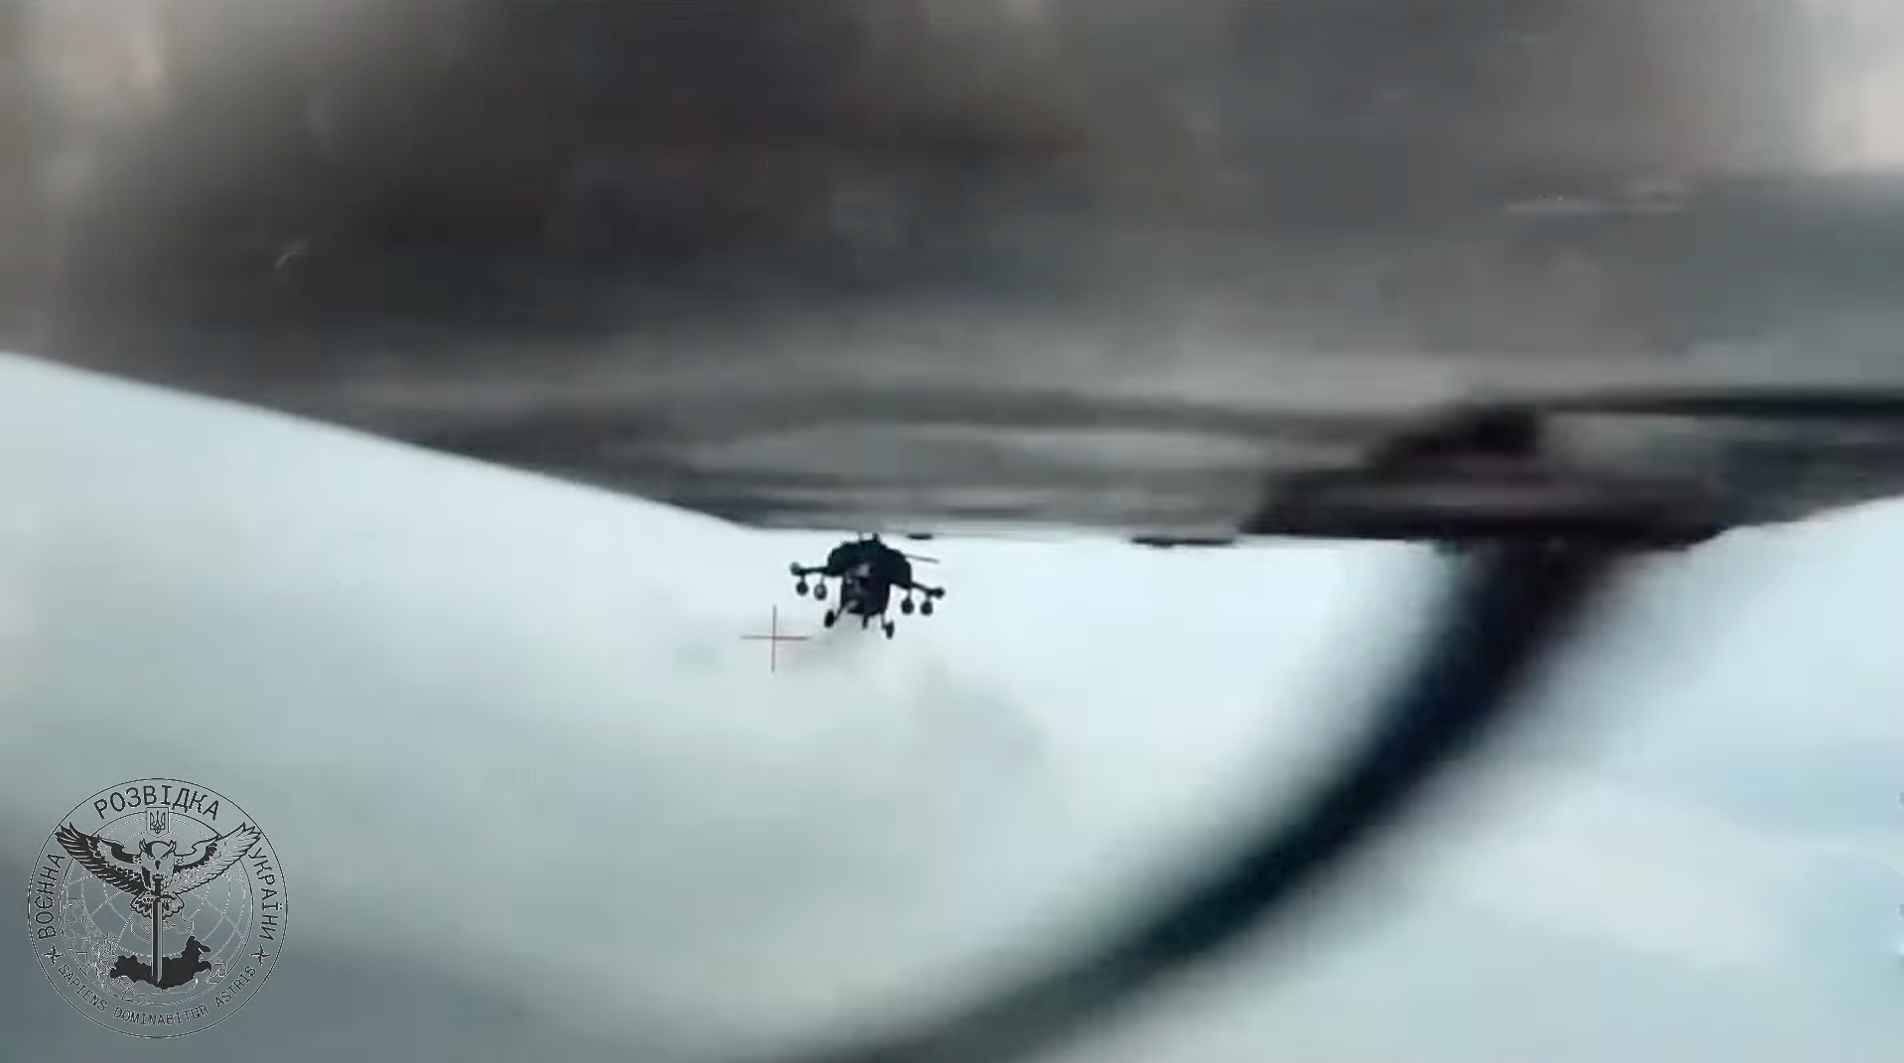 Des images uniques : Les services de renseignement ukrainiens ont diffusé une vidéo montrant comment deux hélicoptères et un avion russes n'ont pas réussi à détruire un drone ukrainien près de la Crimée.